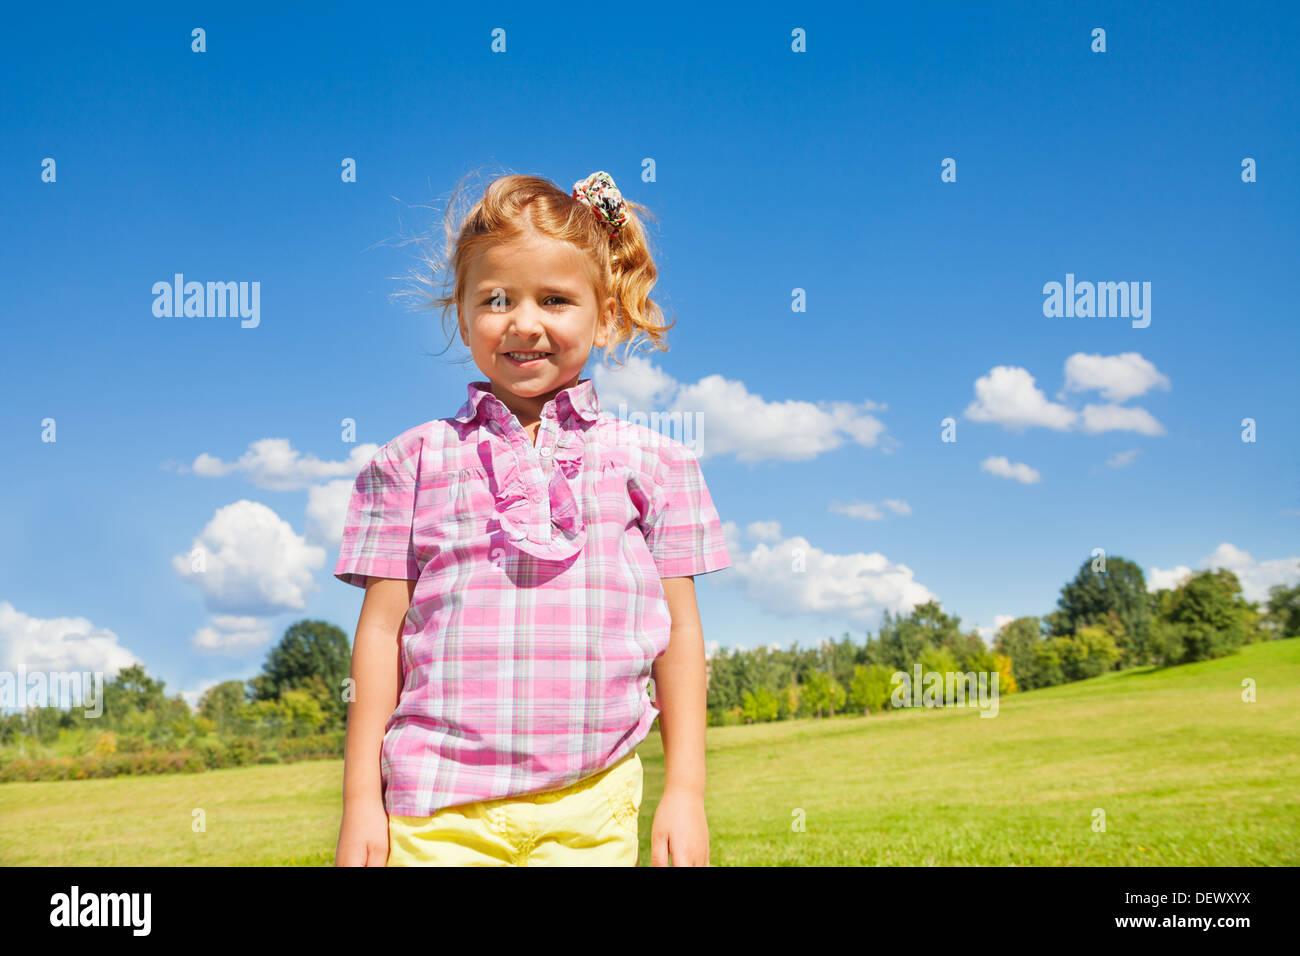 Schönes Lächeln wenig 5 Jahre altes Mädchen im rosa Hemd stehen mit Himmel und Park am sonnigen Tag Stockfoto